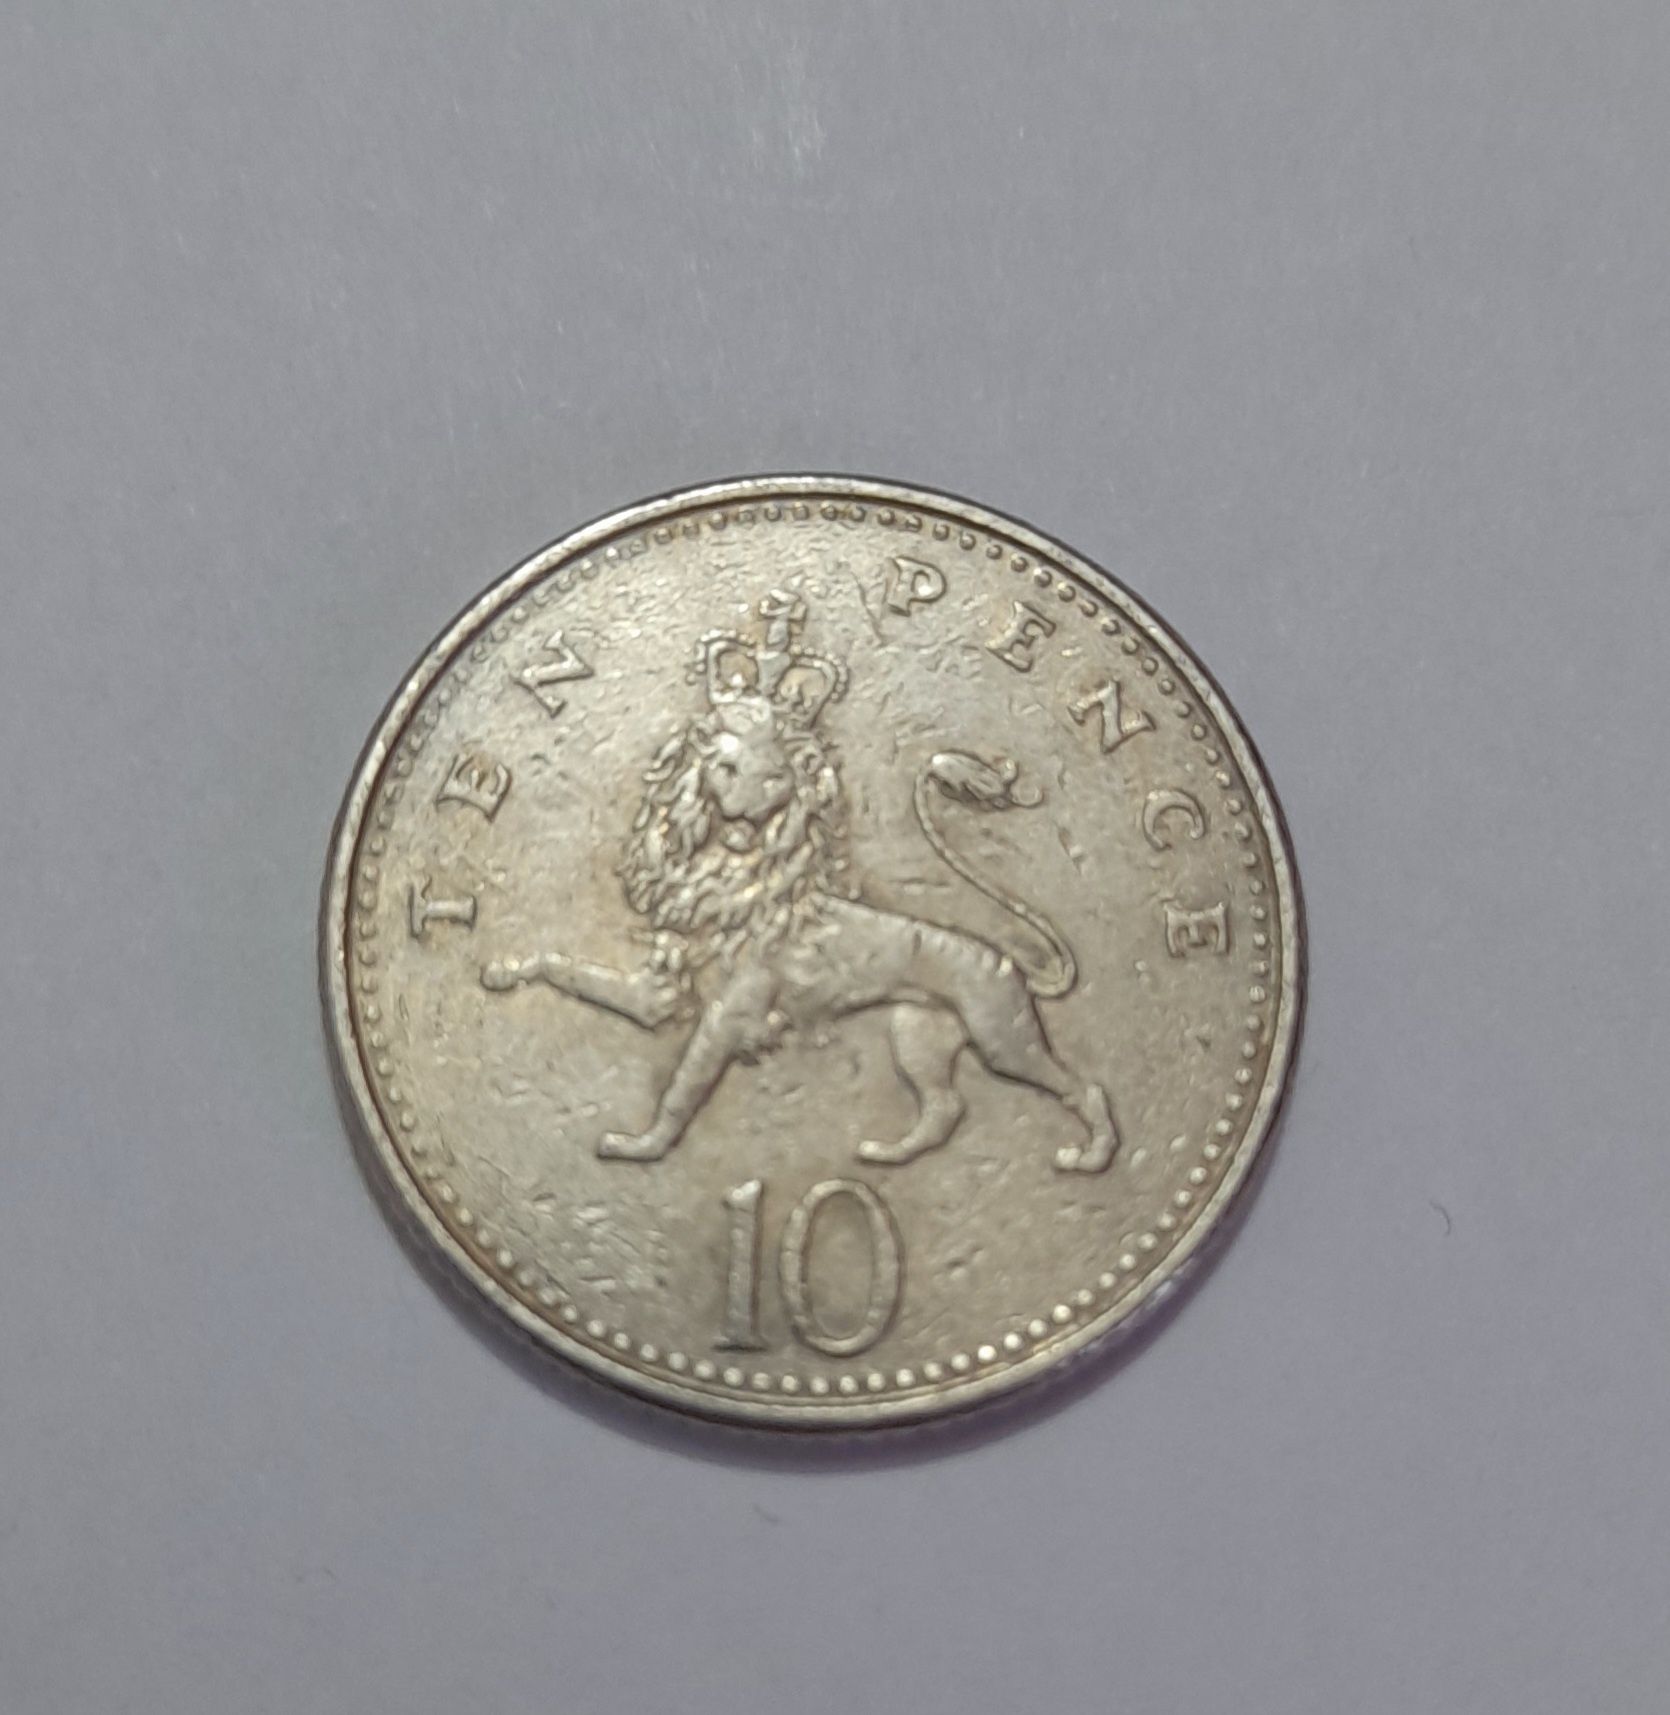 Vand moneda ten pence 1992